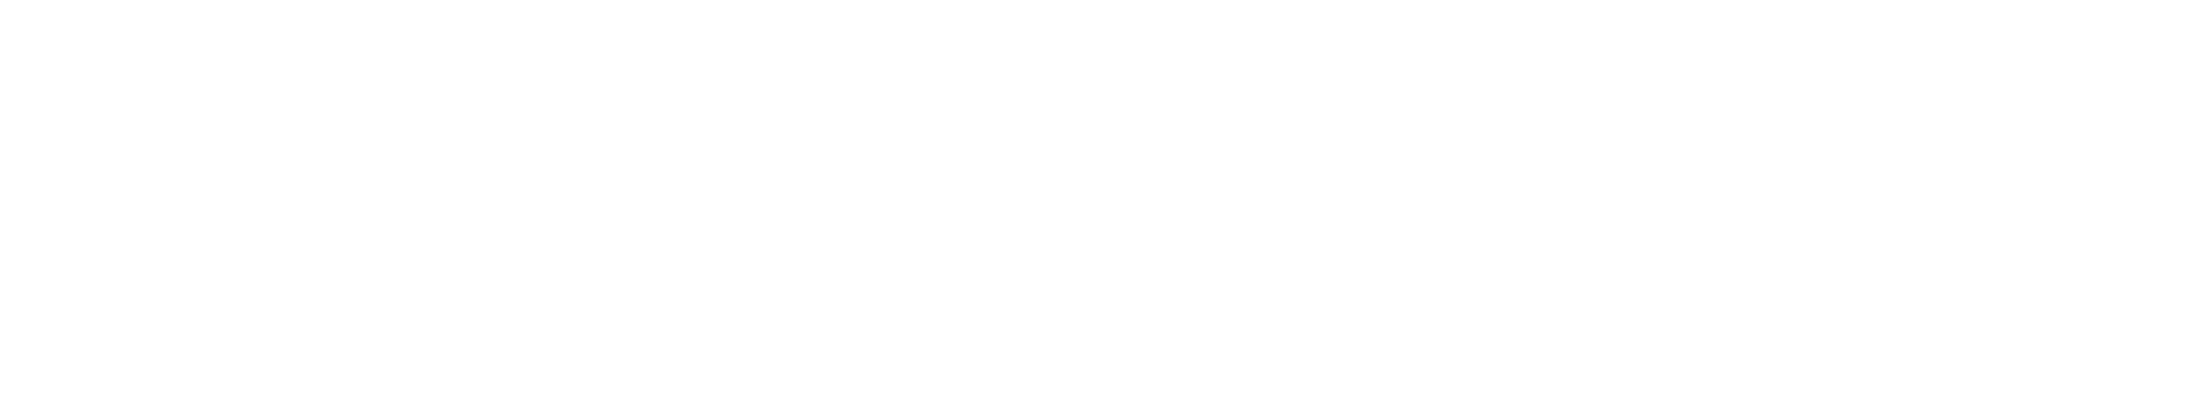 Logo-lufthansa-white